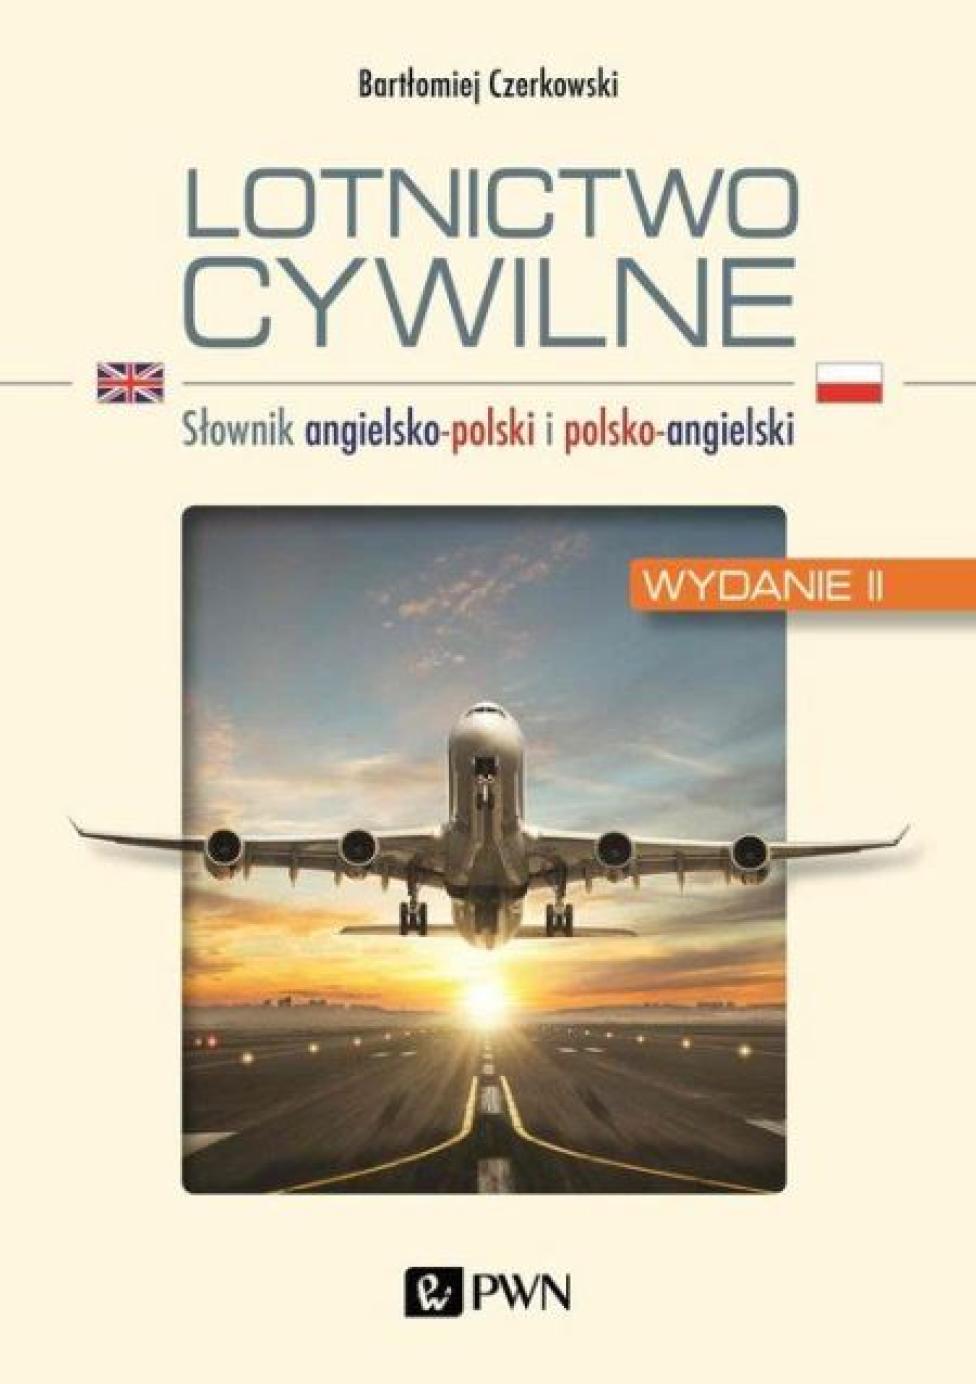 Książka "Lotnictwo cywilne - Słownik angielsko-polski i polsko-angielski" (fot. Wydawnictwo Naukowe PWN)